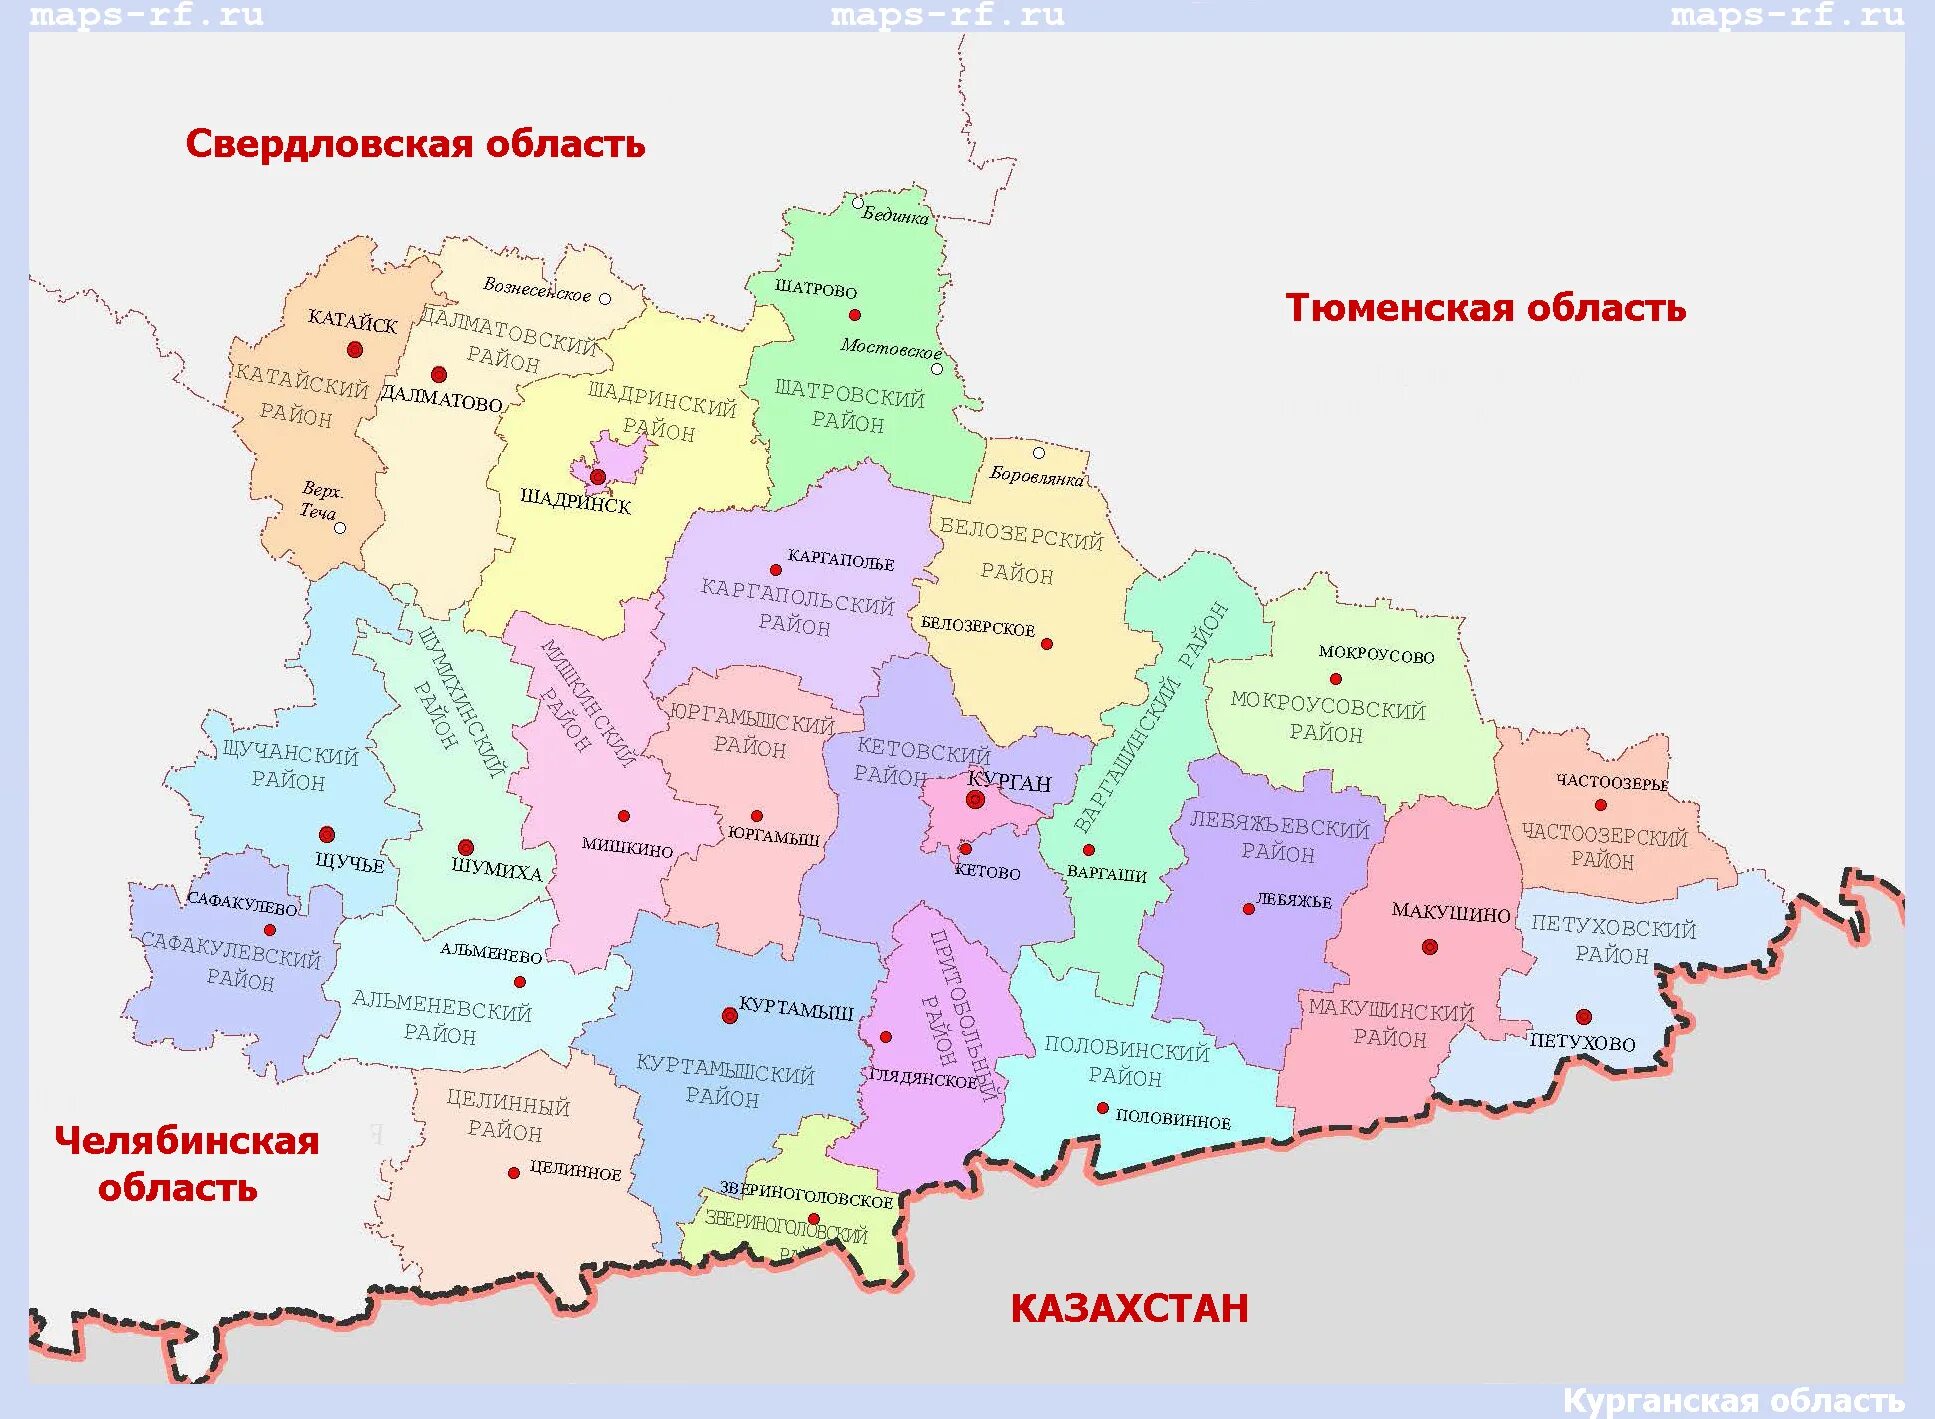 Показать на карте курганскую область с городами. Курганской области карта Курганской области. Карта Кургана и Курганской области. Контурная карта Курганской области с районами. Карта Курганской области по районам.